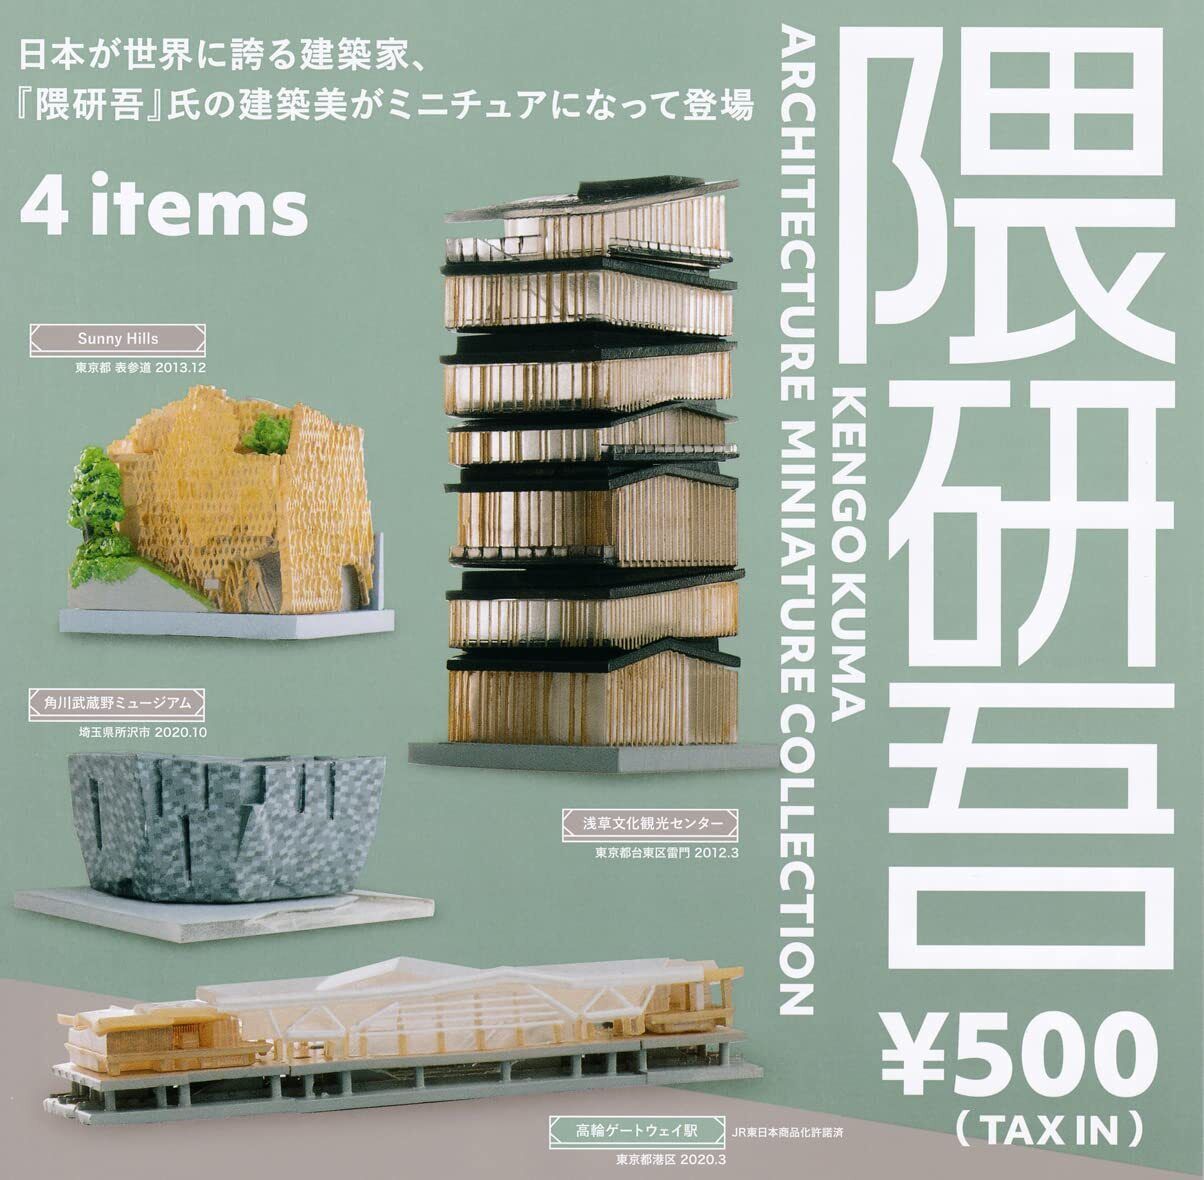 Kenelephant Kengo Kuma ARCHITECTURE COLLECTION Set of 4 Complete Gashapon toys